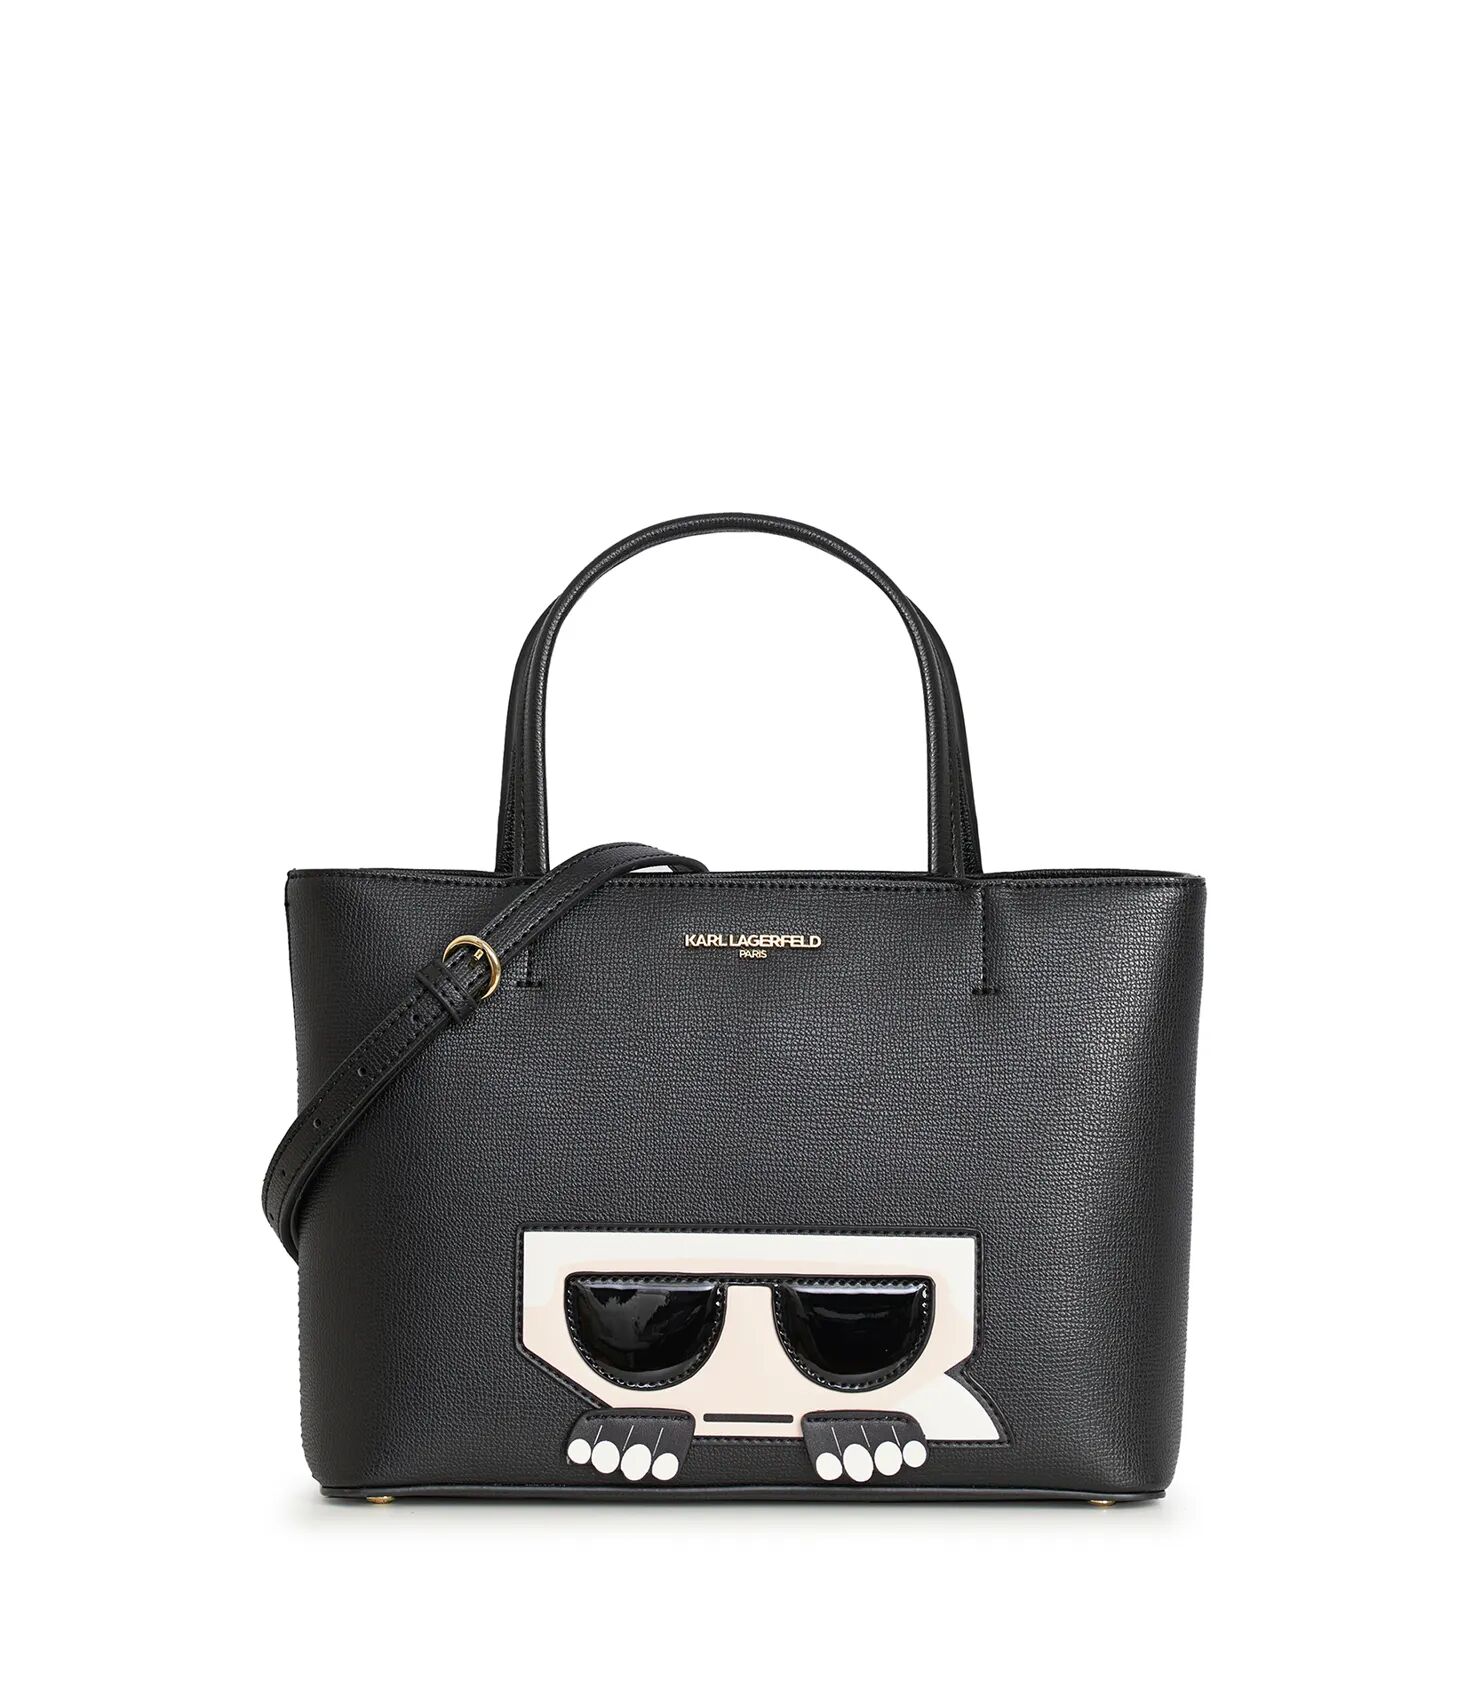 Karl Lagerfeld Paris   Women's Maybelle Tote Bag   Black  - Black